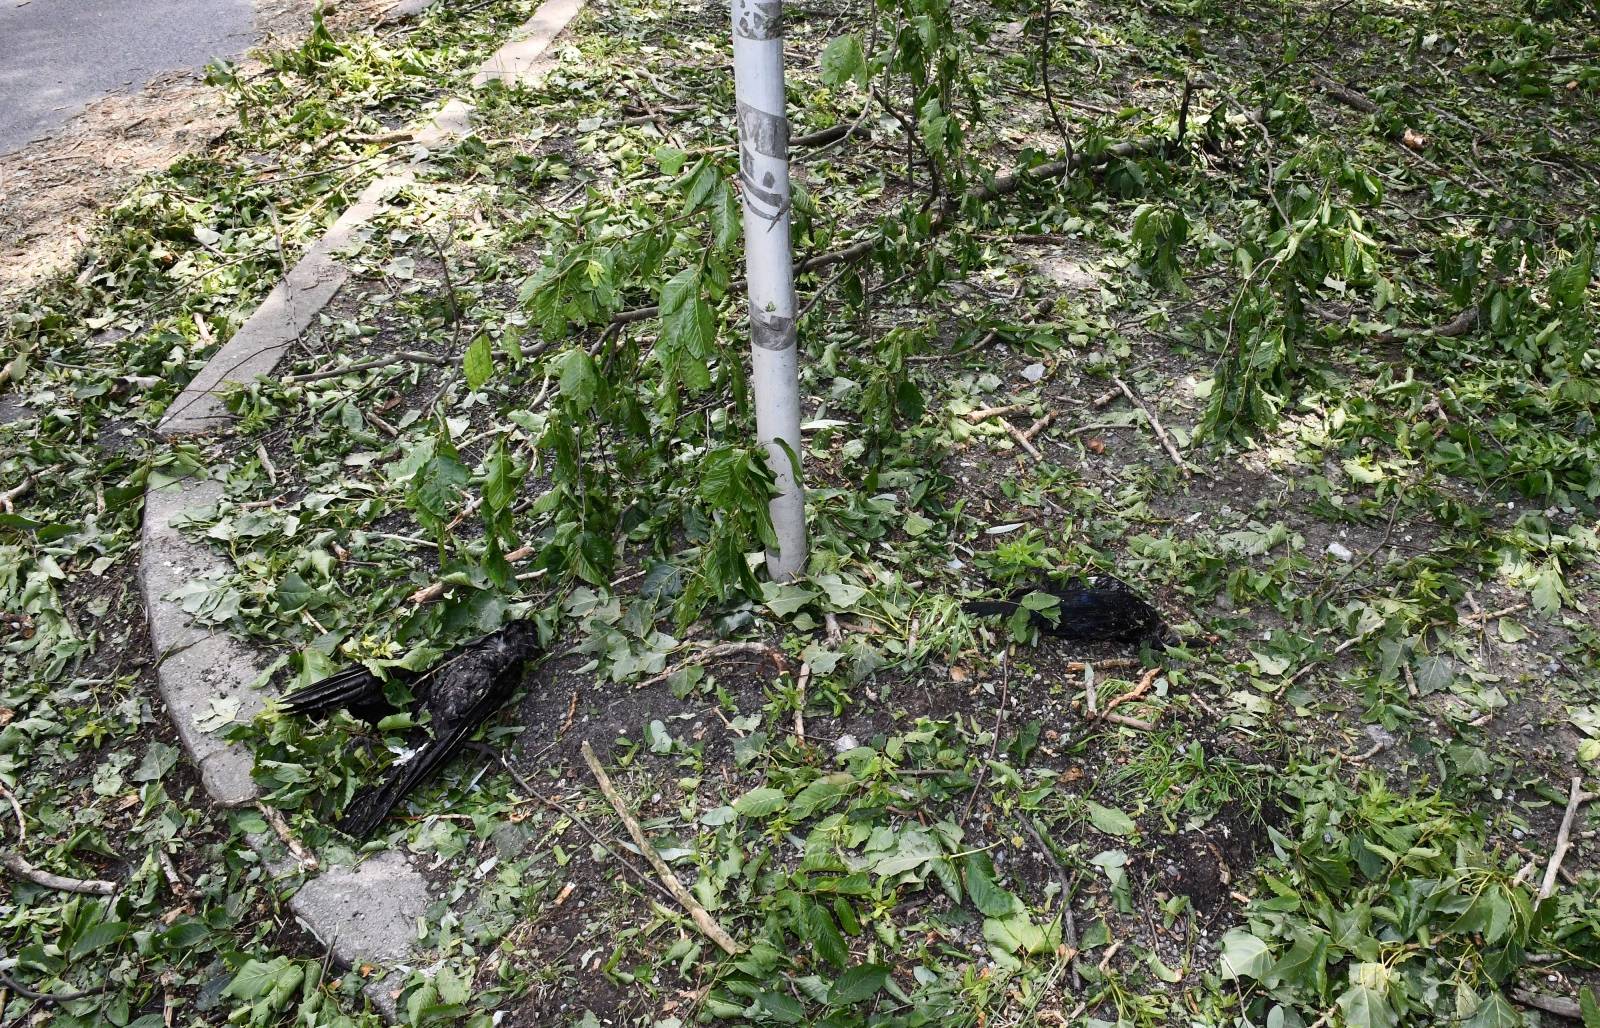 U jučerašnjem snažnom nevremenu stradale su i brojne ptice u parku Zvečevo pokraj Orljave.